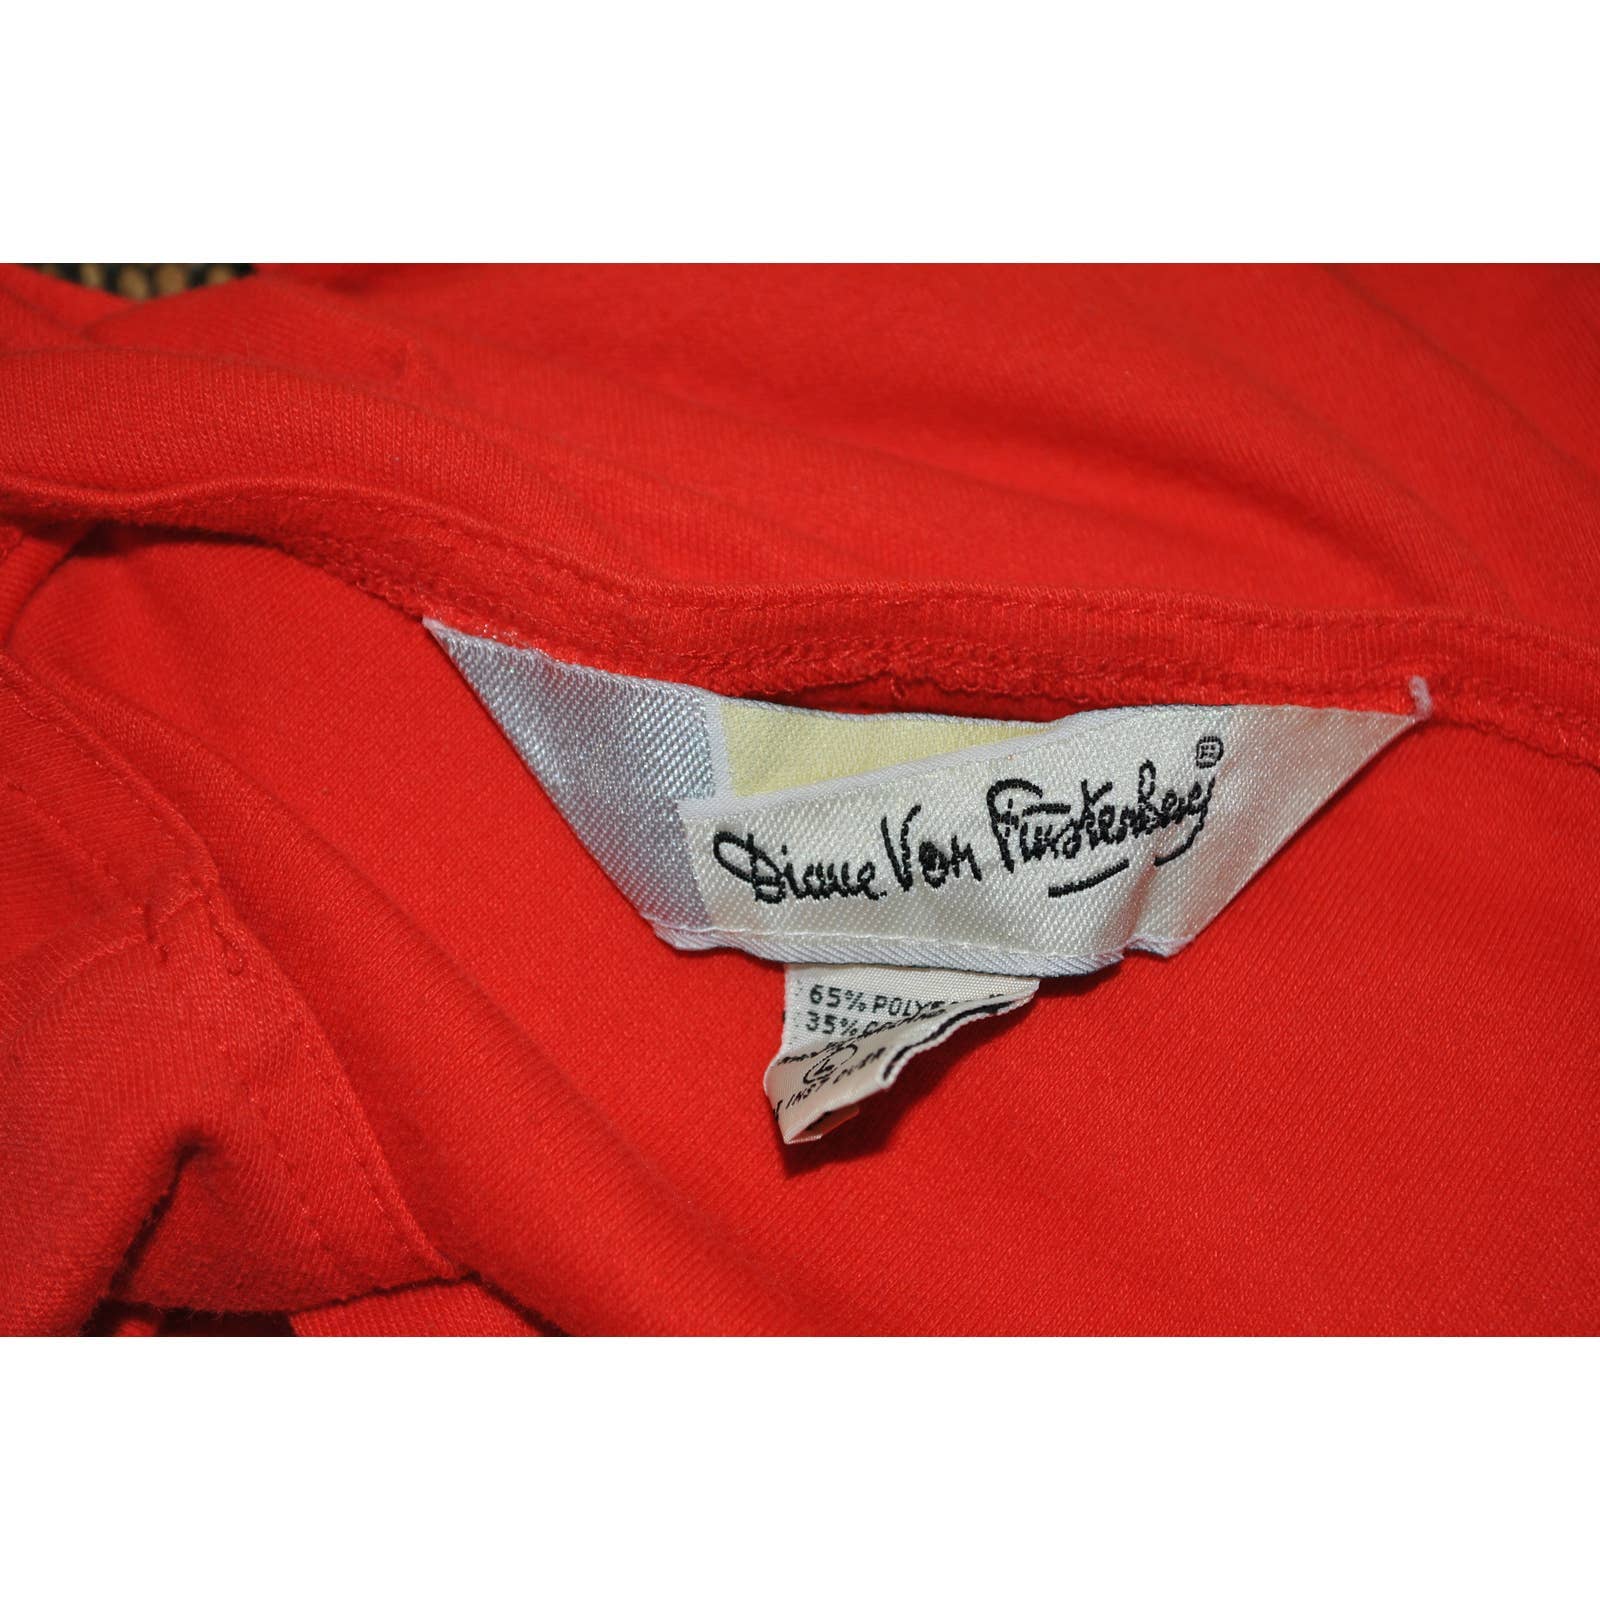 Vintage Diane Von Furstenberg Red Cap Sleeve Top - L